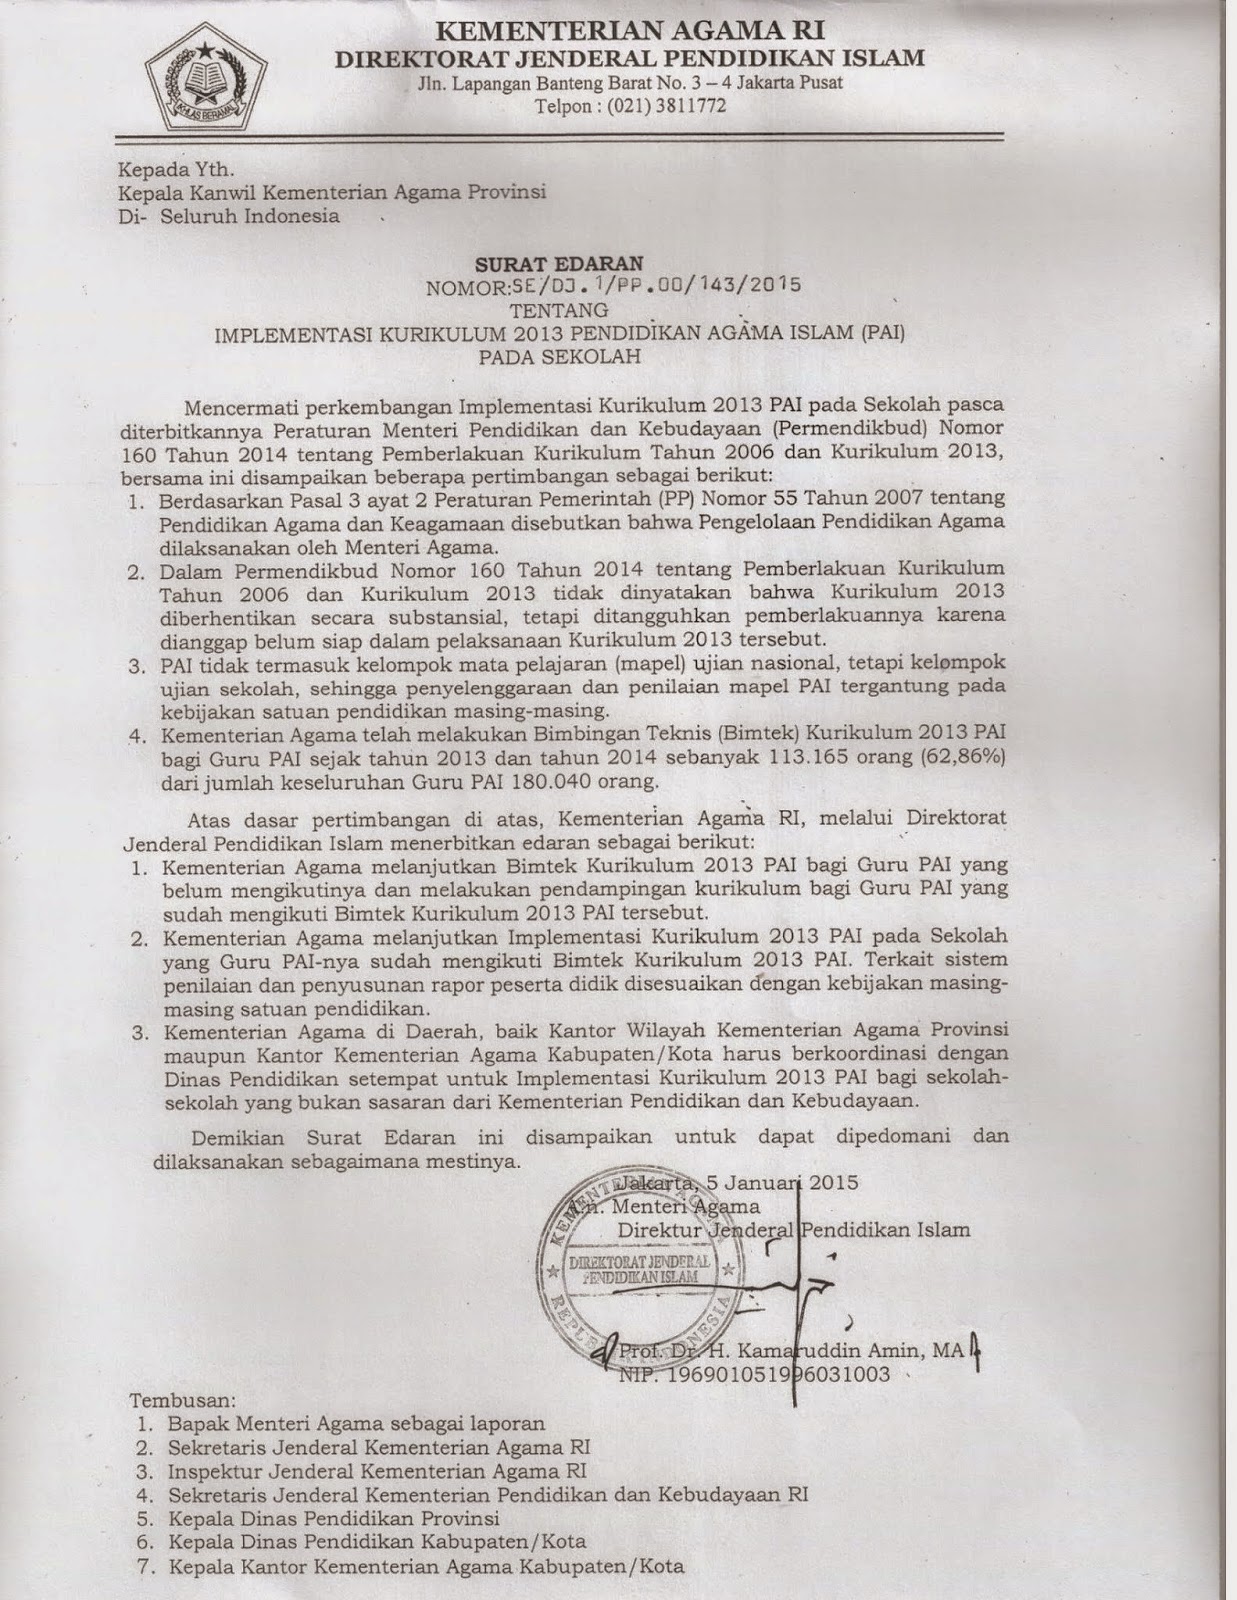 Kementerian Agama melalui Direktorat Jenderal Pendidikan Islam mengeluarkan surat edaran nomor SE DJ I PP 00 143 2015 tentang Implementasi Kurikulum 2013